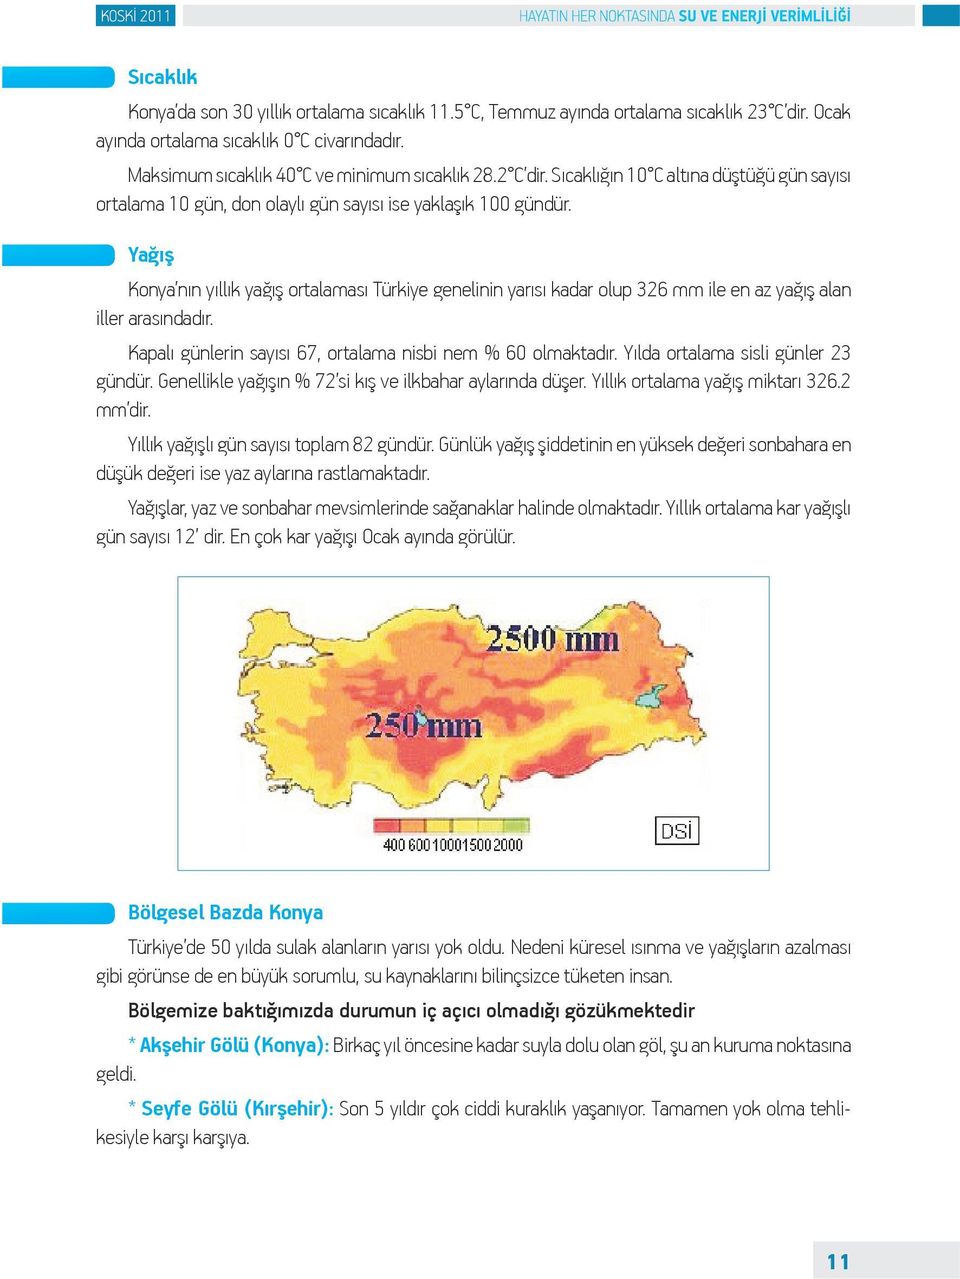 Yağış Konya nın yıllık yağış ortalaması Türkiye genelinin yarısı kadar olup 326 mm ile en az yağış alan iller arasındadır. Kapalı günlerin sayısı 67, ortalama nisbi nem % 60 olmaktadır.